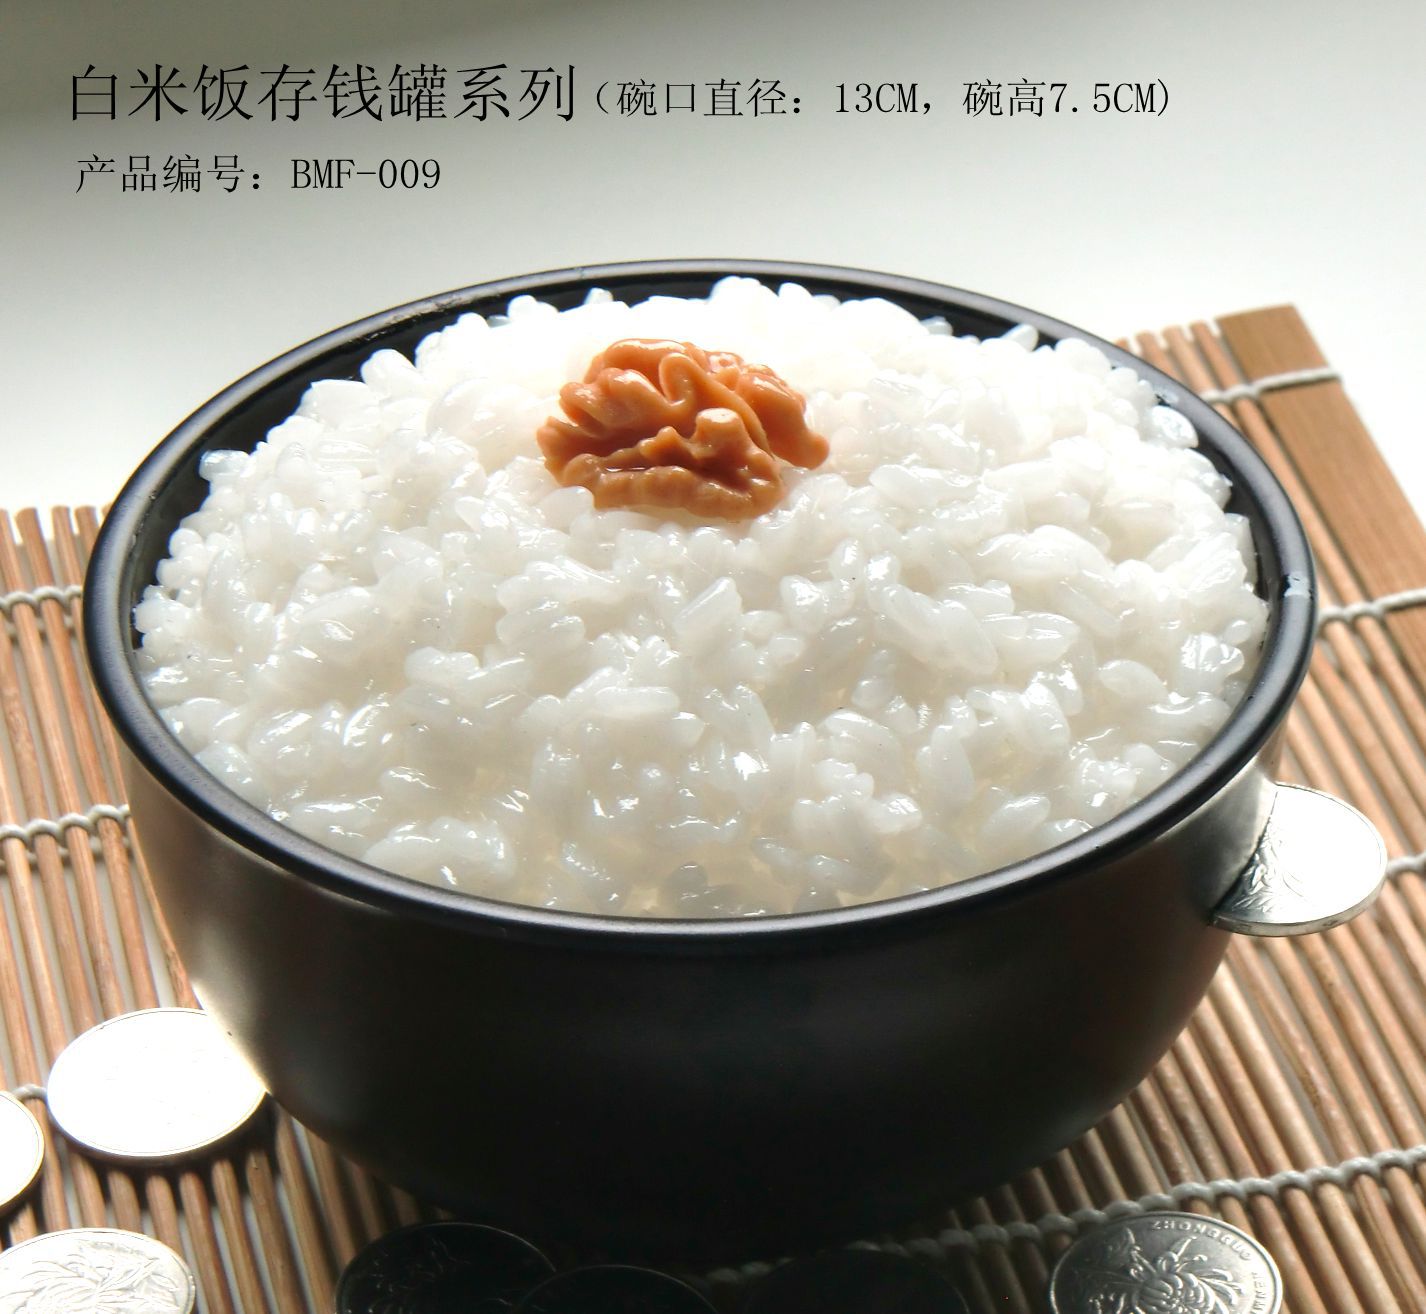 白米饭存钱罐（BMF-009）